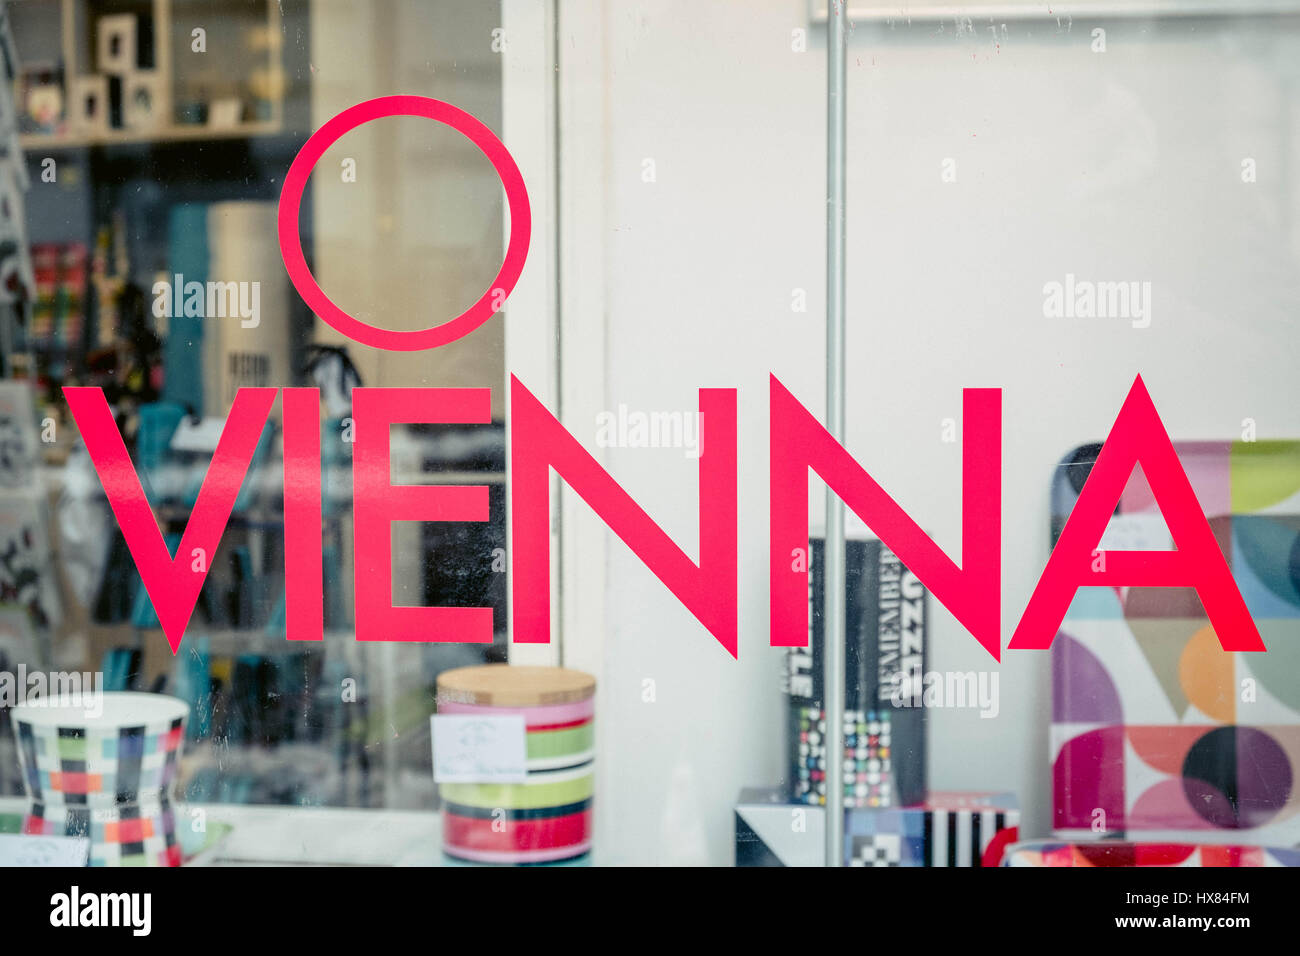 Farbfoto der Wörter O Wien in einem bunten Schaufenster in Vienna/Wien Österreich. Stockfoto